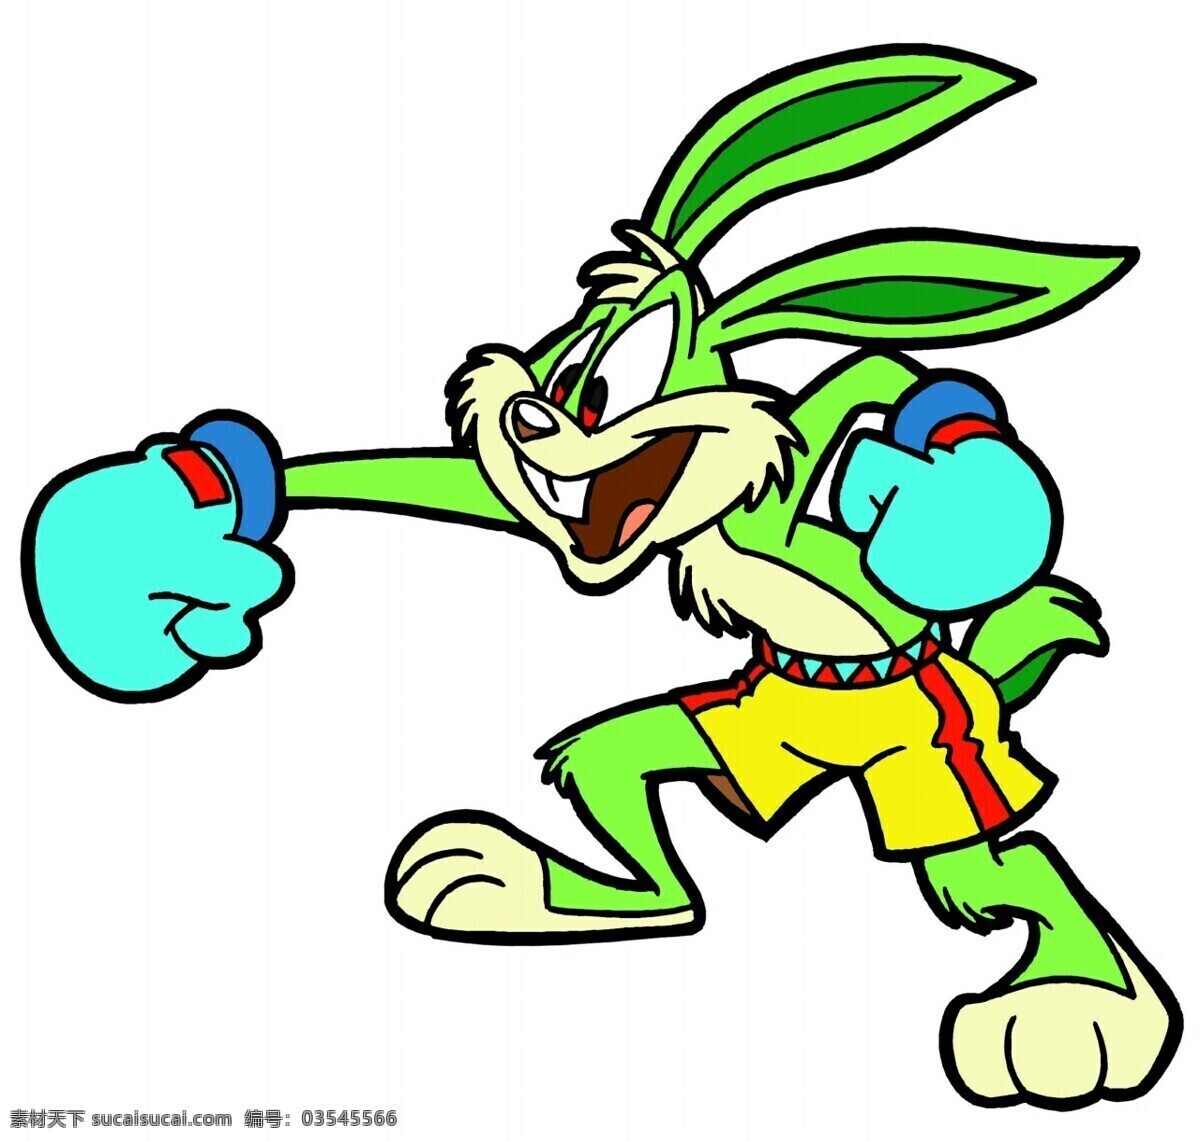 小 兔子 拳击 儿童绘画素材 卡通小动物 卡通 图画 动物 造型 动漫 可爱